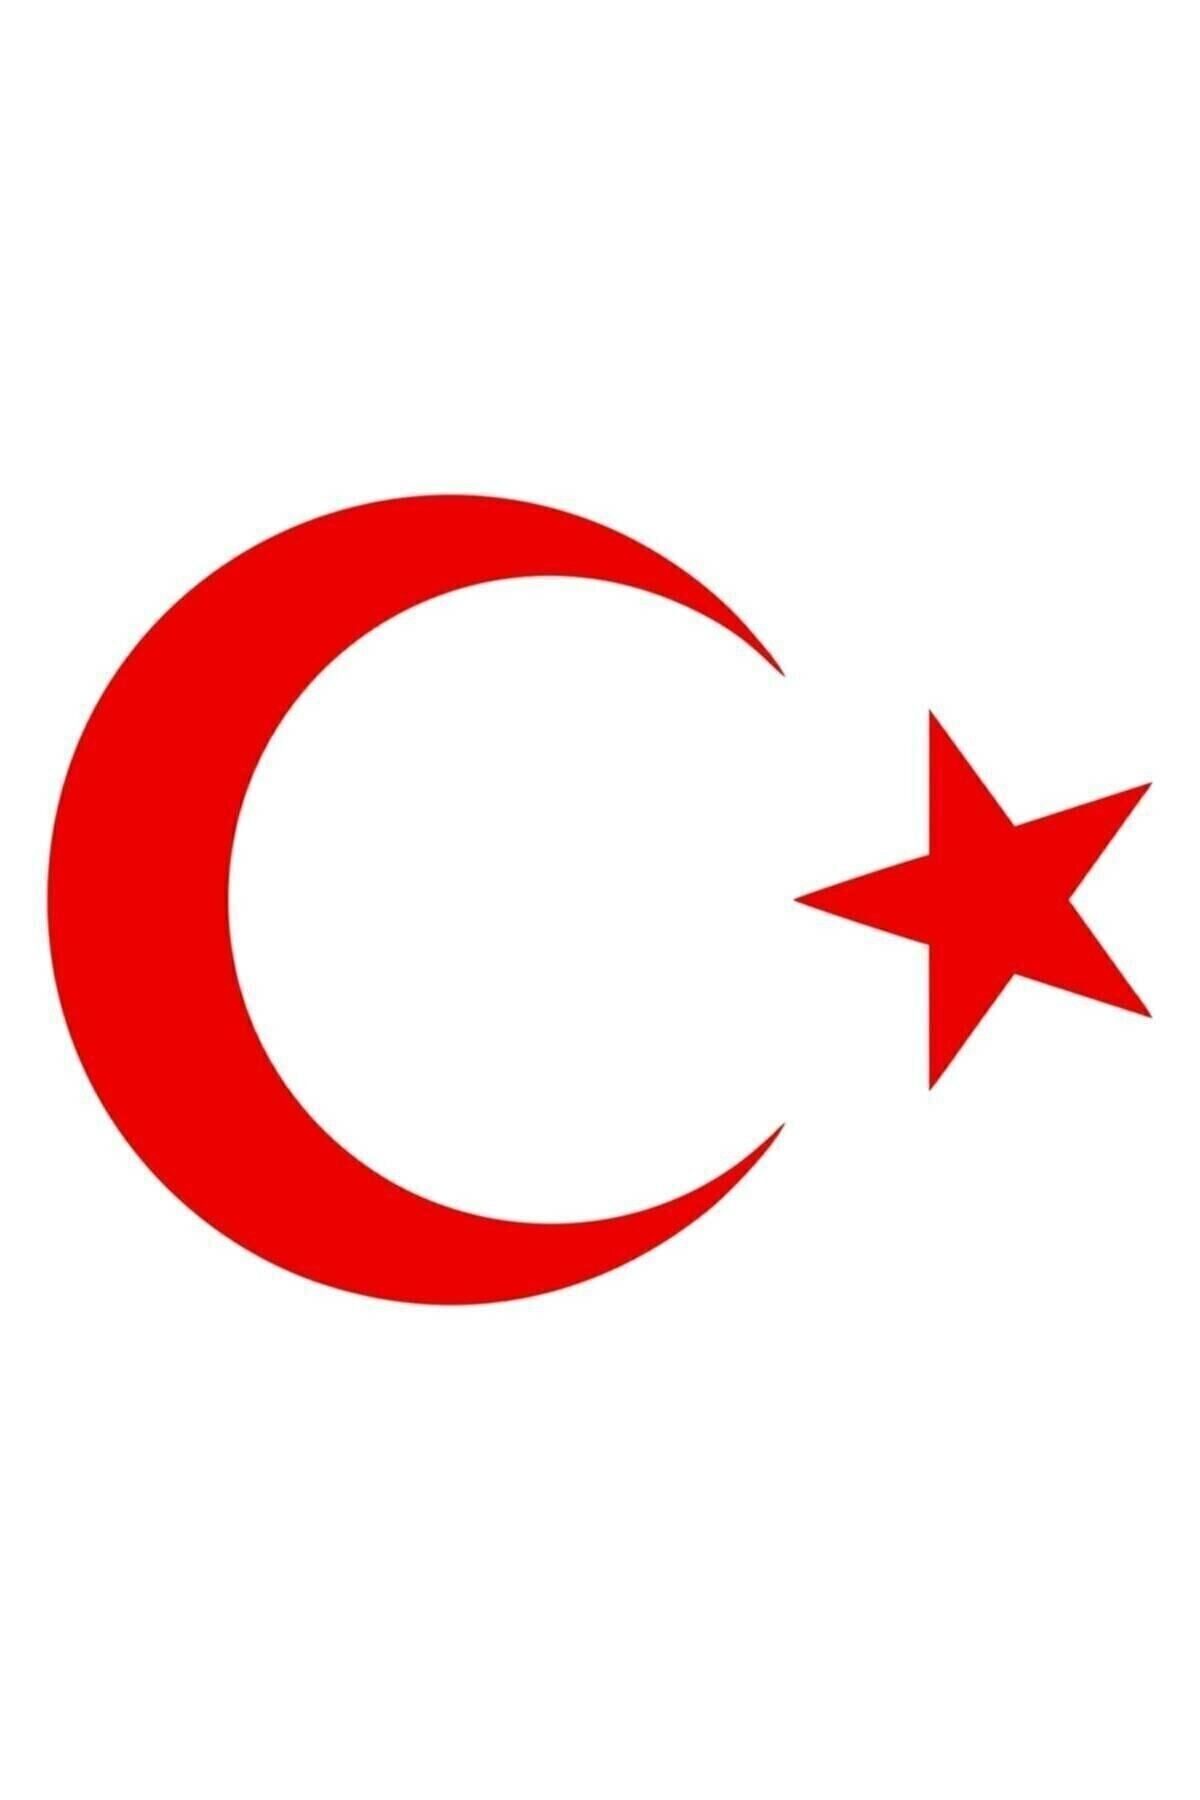 HMNL Ay Yıldız Sticker Türk Bayrağı Sticker 15 X 11 Cm Kırmızı